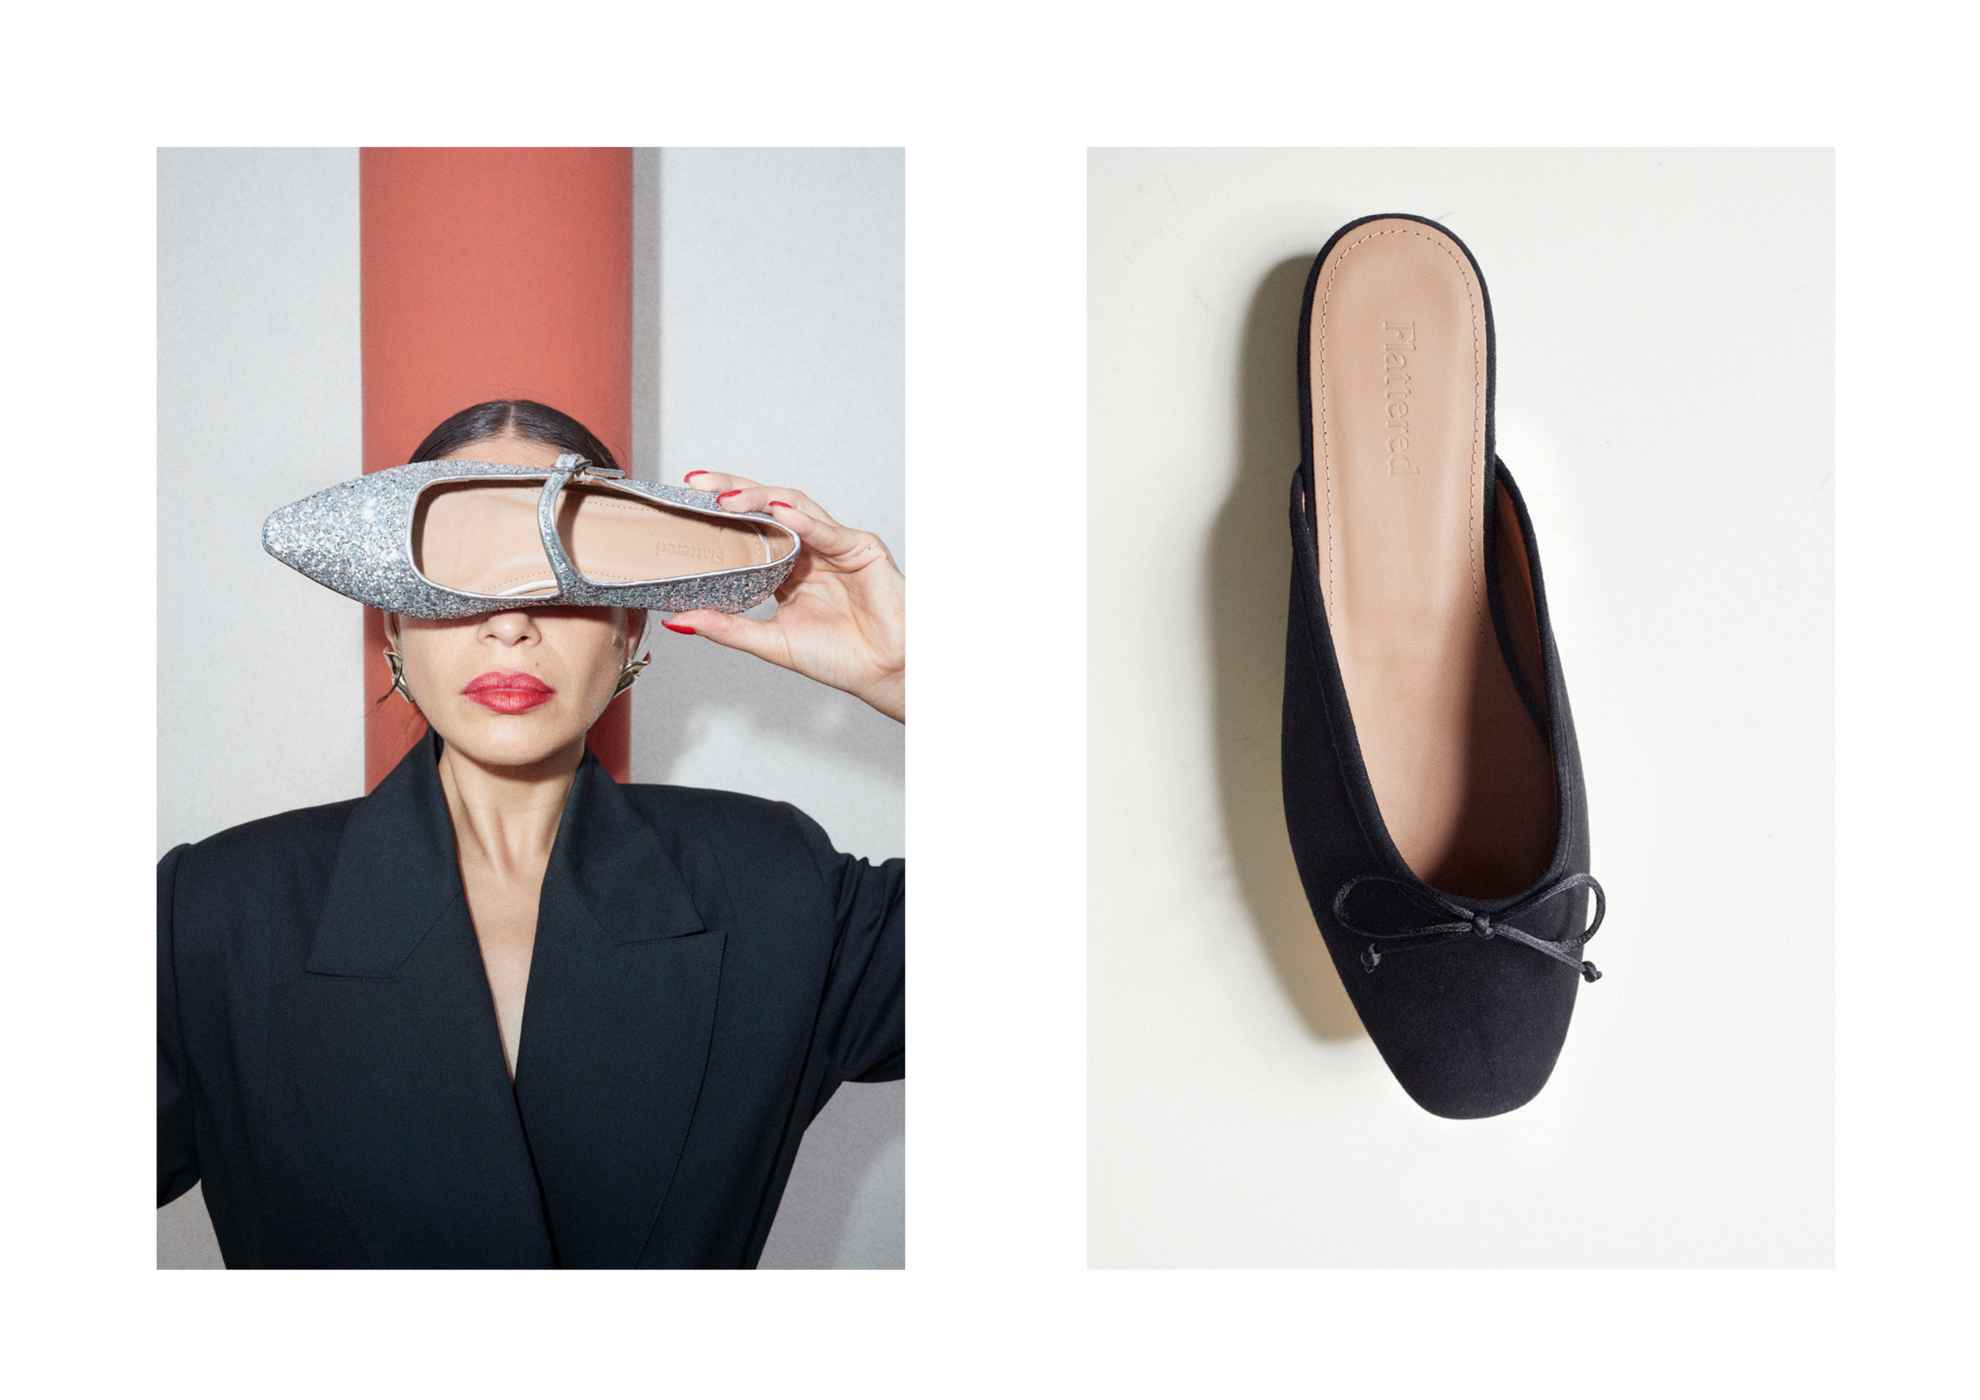 Deux images. Une avec une femme tenant une chaussure devant ses yeux, et une avec une ballerine noire posée sur une surface blanche.